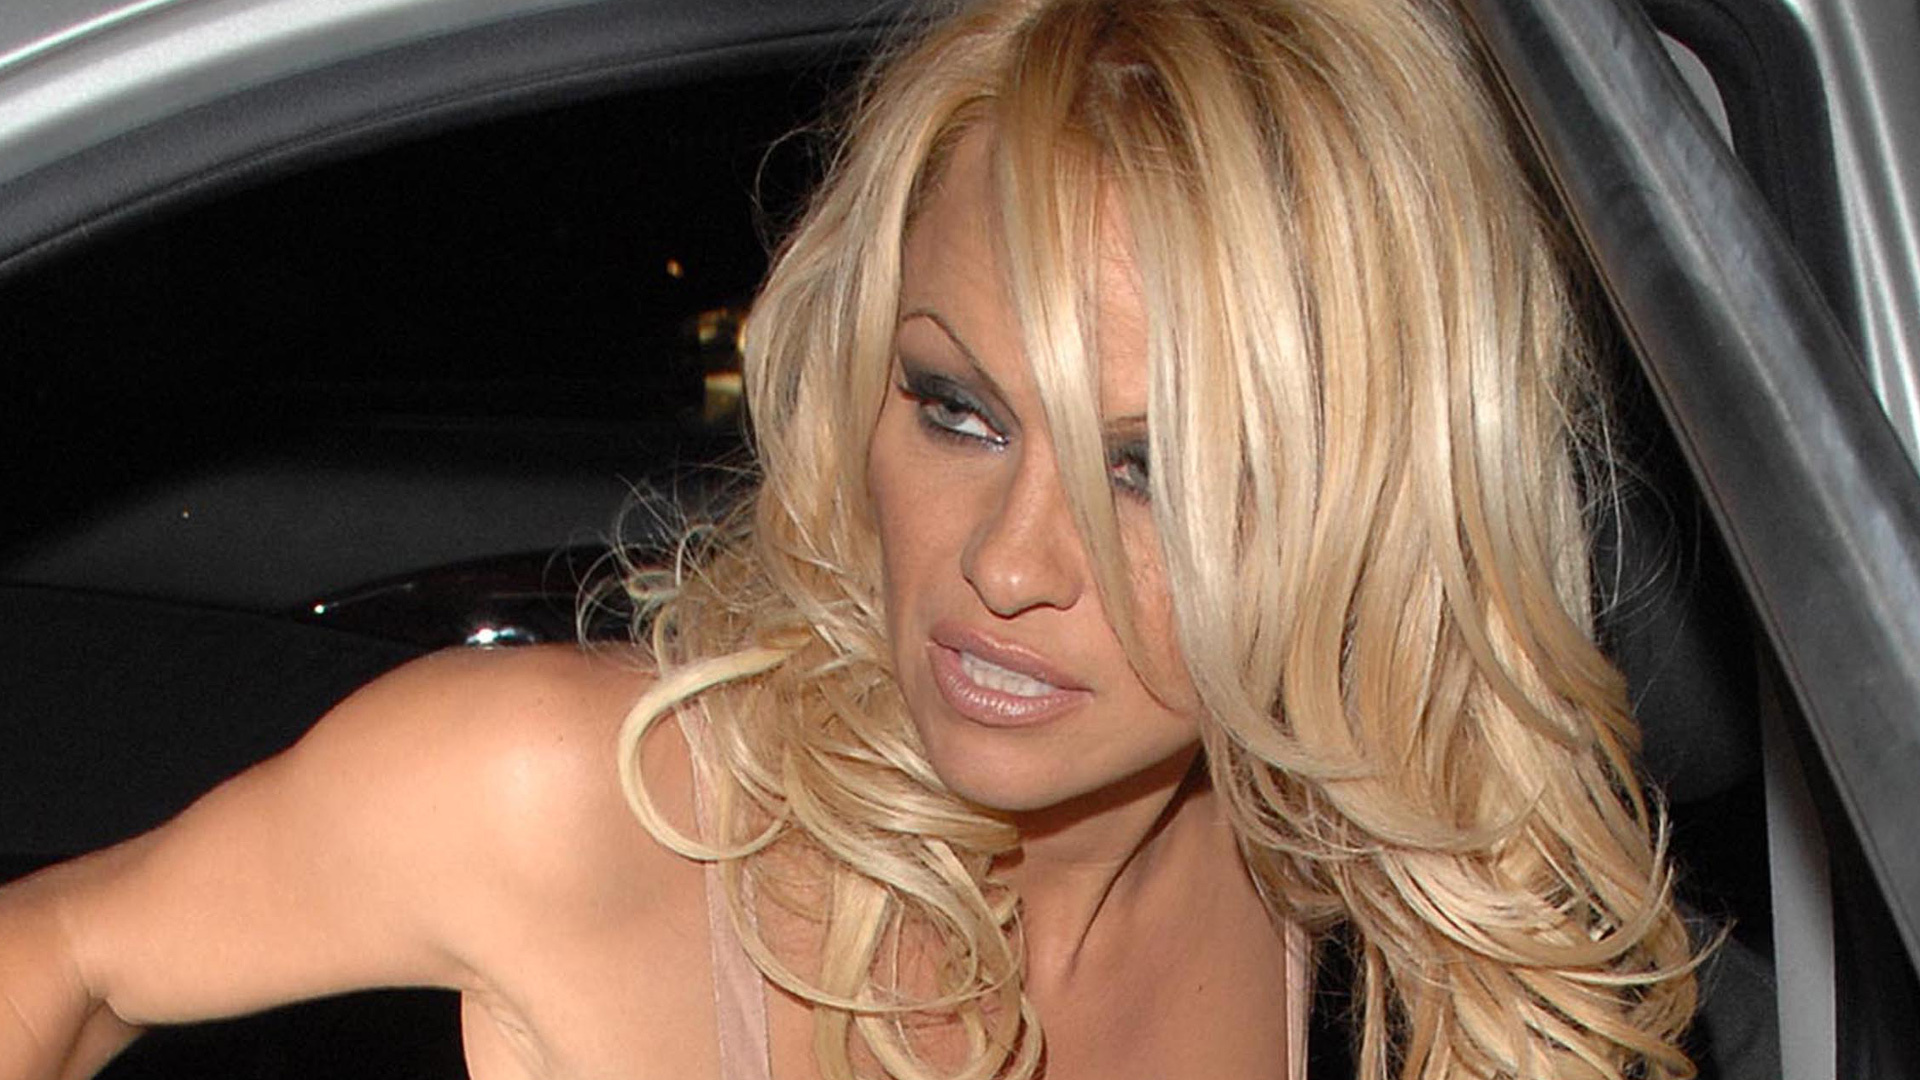 Pamela Anderson el vídeo porno casero fue su mayor pesadilla